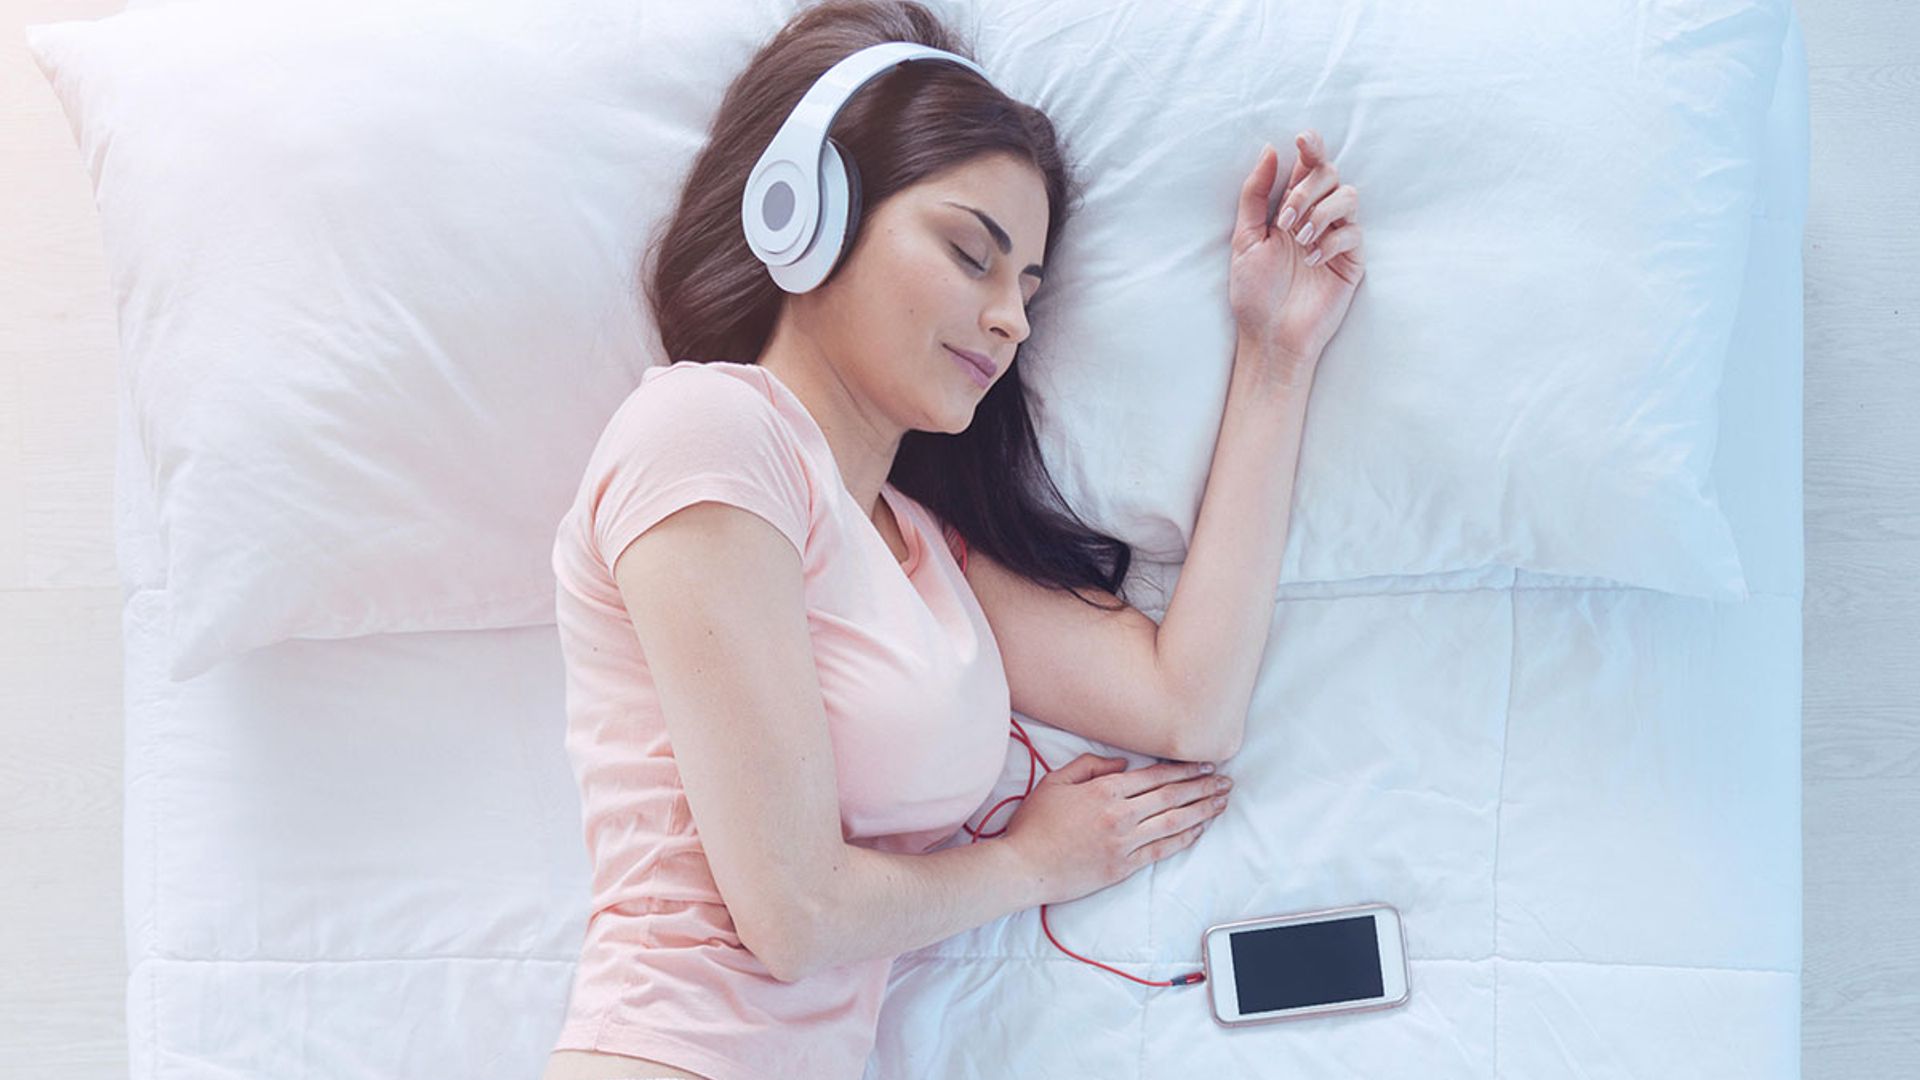 Listen to Sleep Music To Fall Asleep Fast - Relaxing Music, Stress